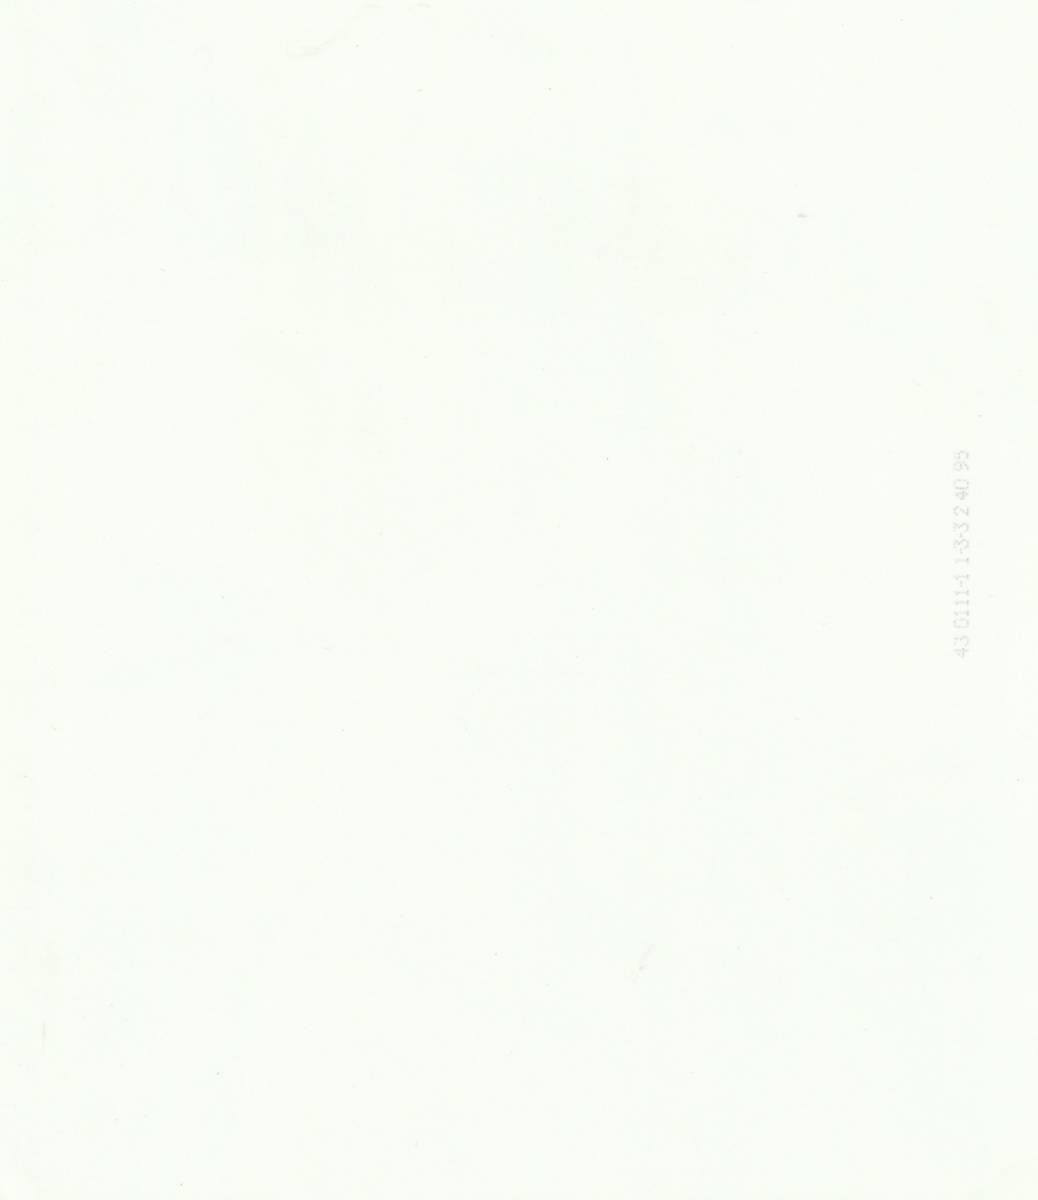 米国俳優 ポール・ニューマン （Paul Newman）直筆サイン入り 白黒ポートレート写真④ 大きさは、約25cmX20cm_写真裏面